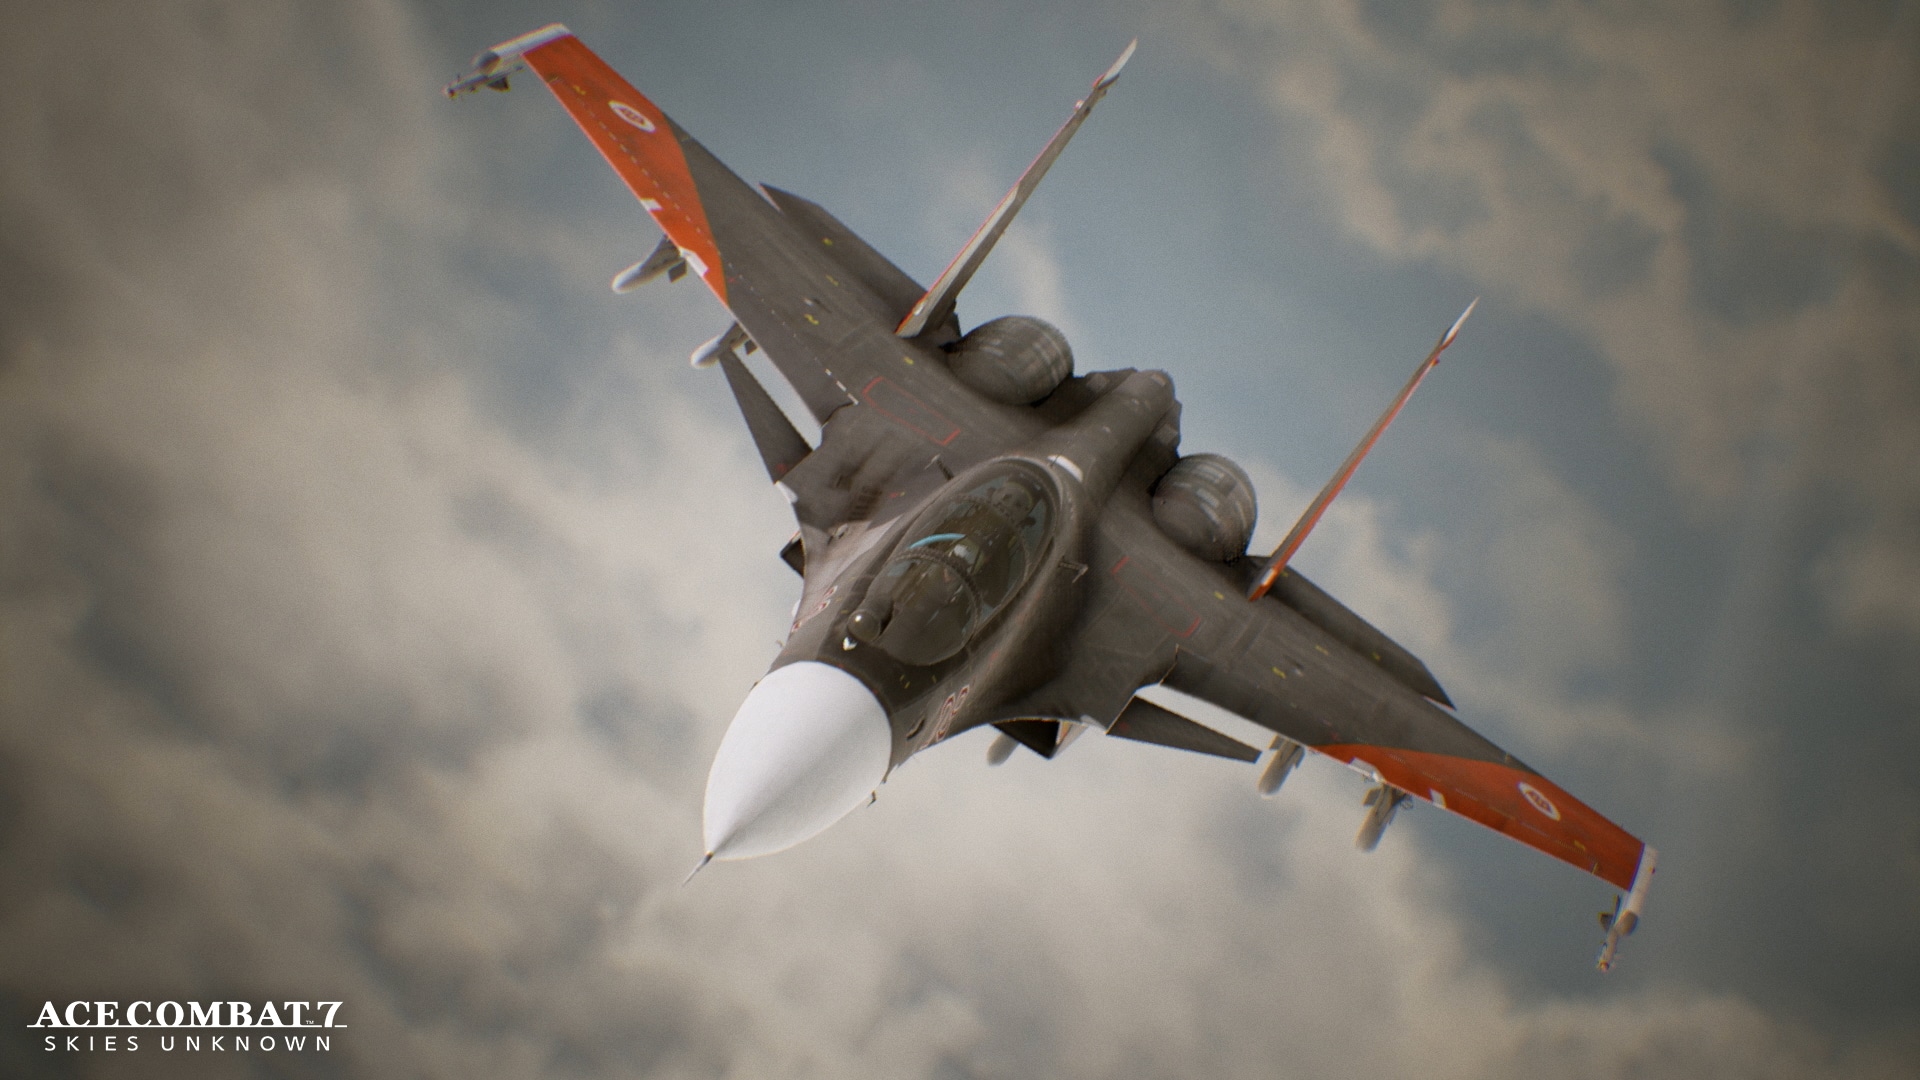 Mira estas impresionantes imágenes de Ace Combat 7: Skies Unknown